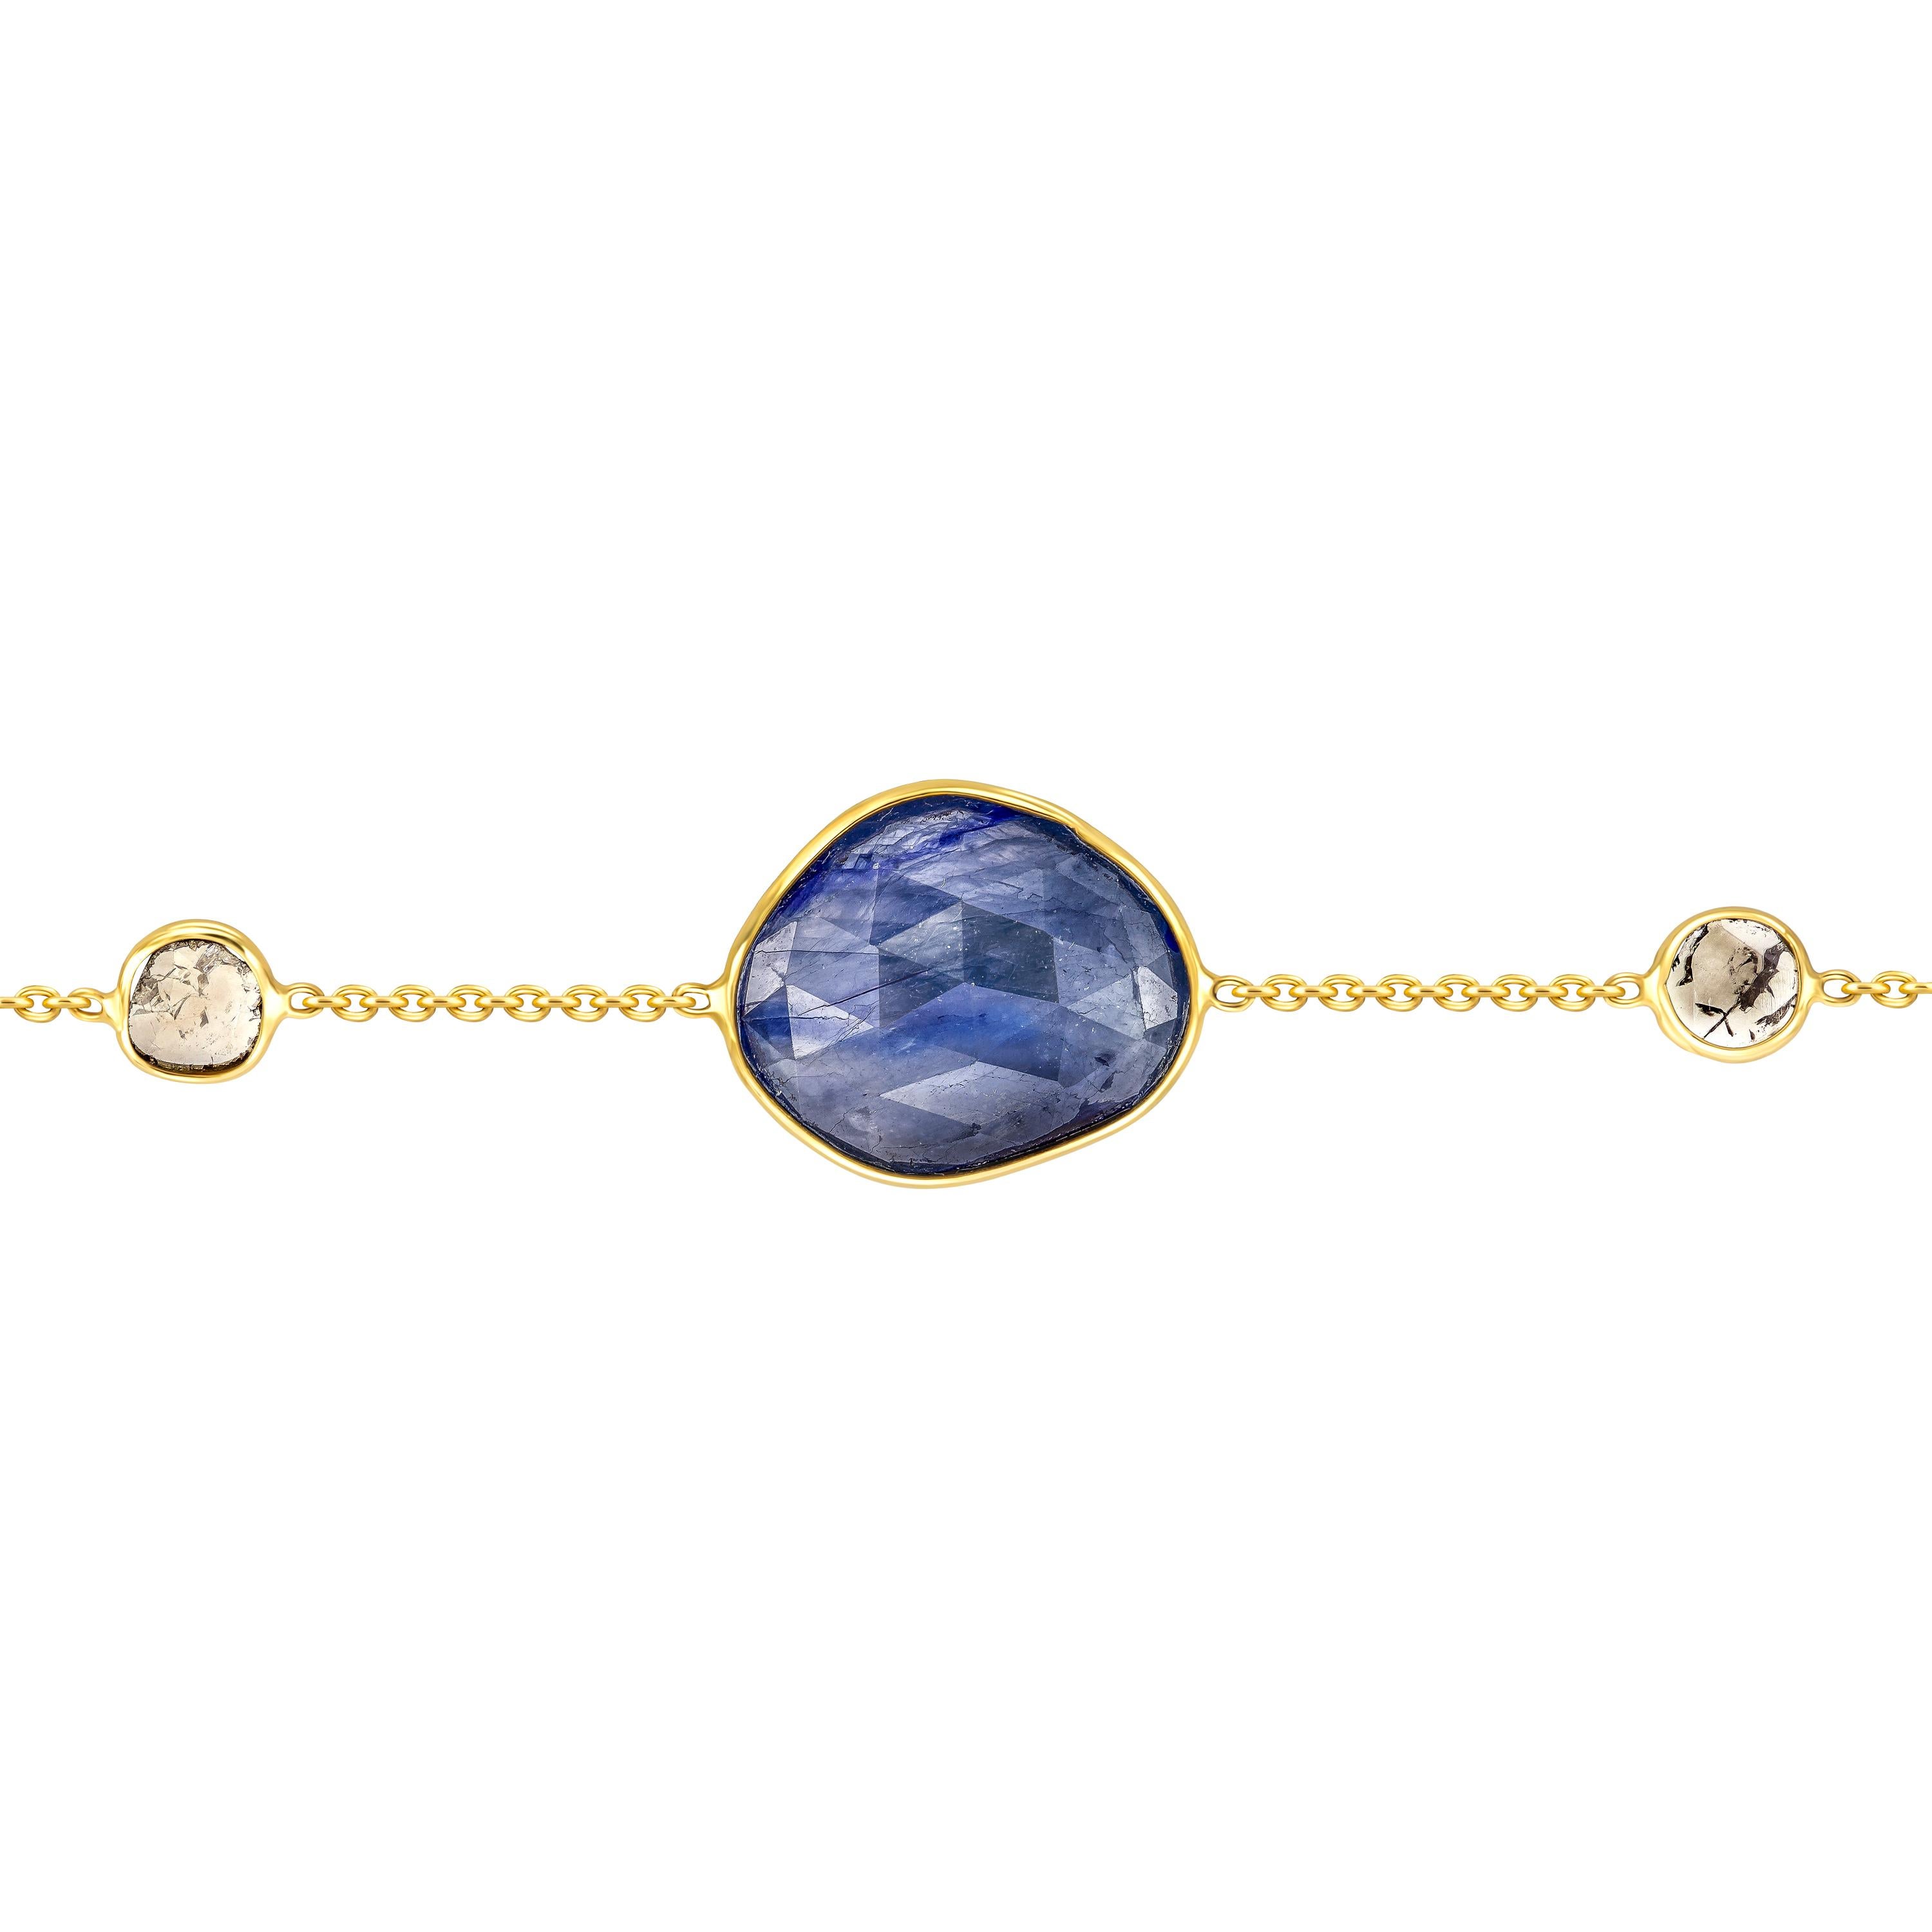 Schmücken Sie Ihr Handgelenk mit diesem wunderschönen Armband mit 4,05 Karat blauem Saphir im Rosenschliff und 0,15 Karat in zwei Diamantscheiben, die in 18 Karat Gelbgold gefasst sind. Jedes Stück ist handgefertigt mit einem einzigartig geformten